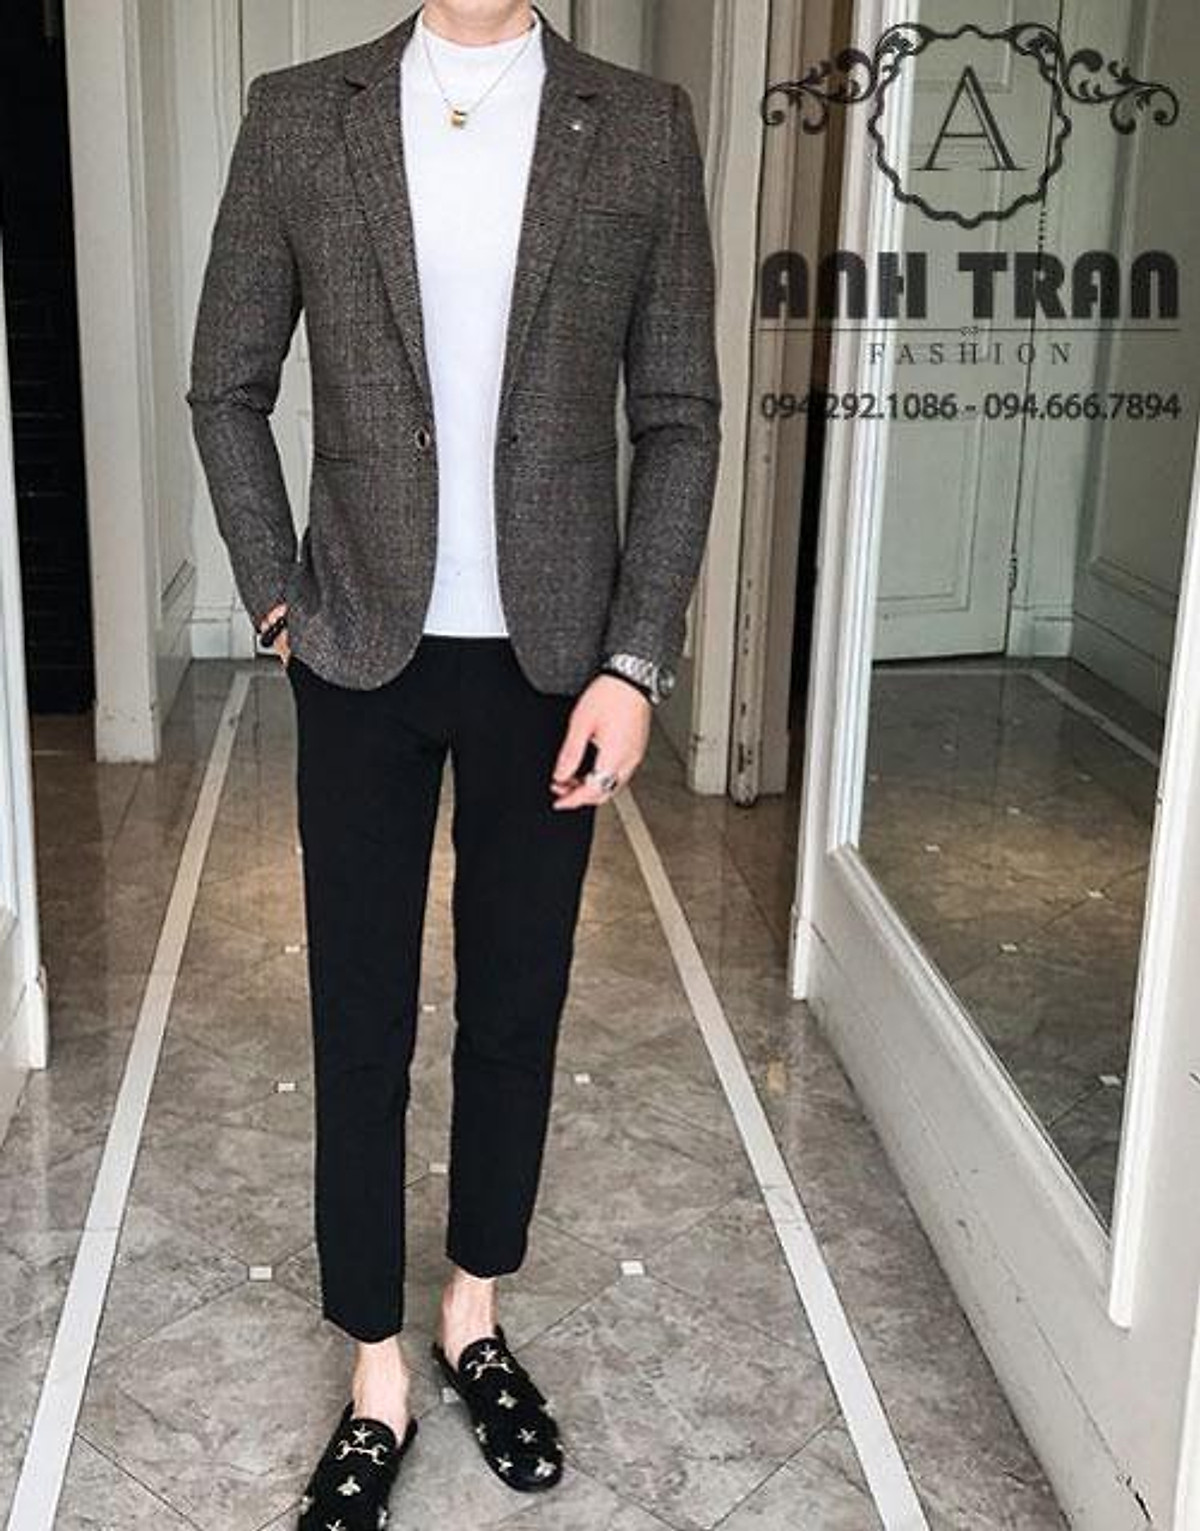 Anh Trần Fashion  Áo vest dạ Nam măng tô áo khoác sơ mi nam Hàn Quốc   Hanoi